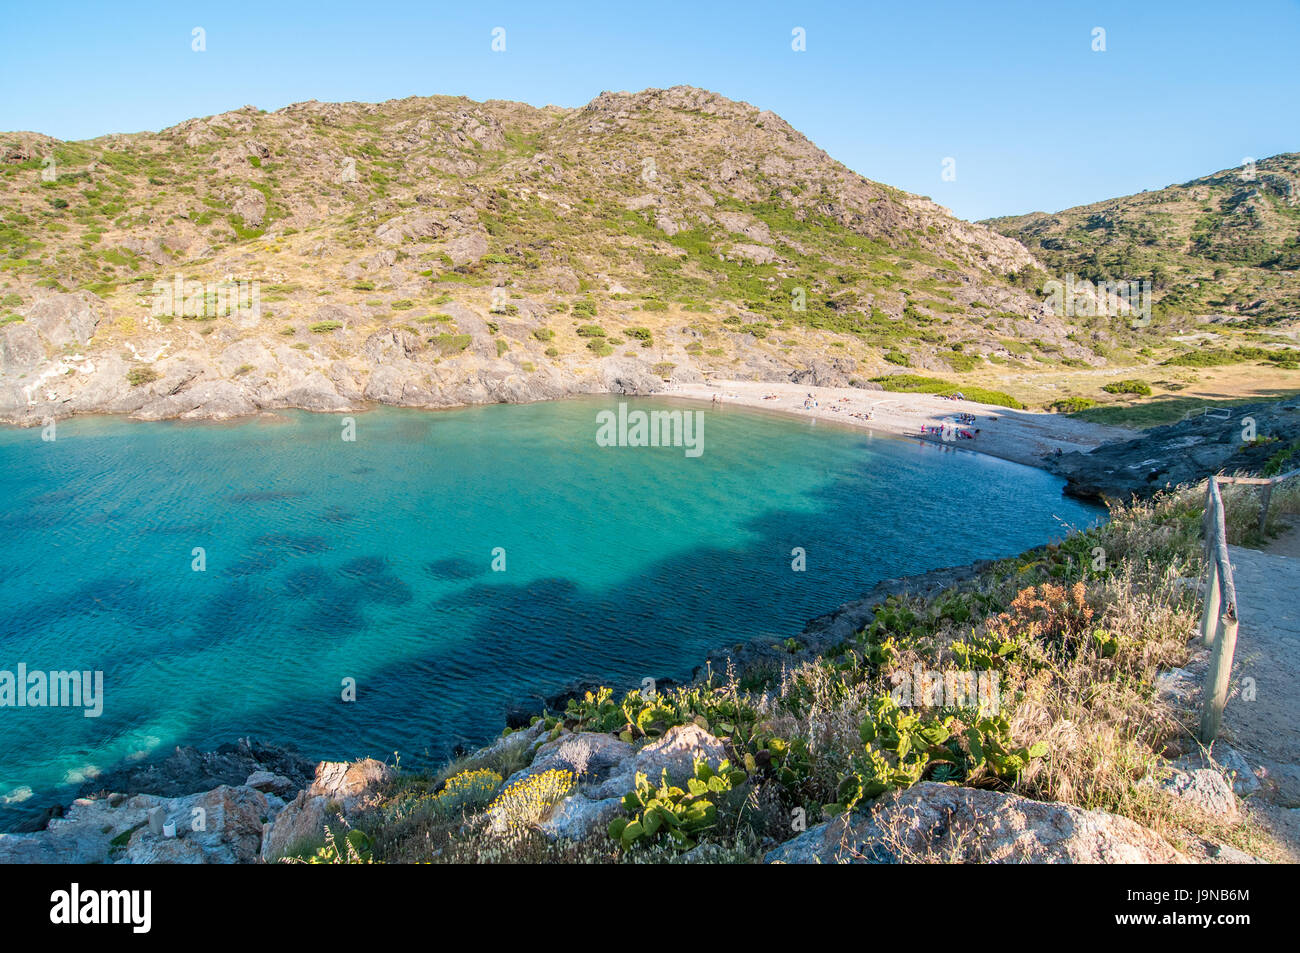 View of Cala Tamariua, Beach in Port de la Selva, Costa Brava, Catalonia  Stock Photo - Alamy